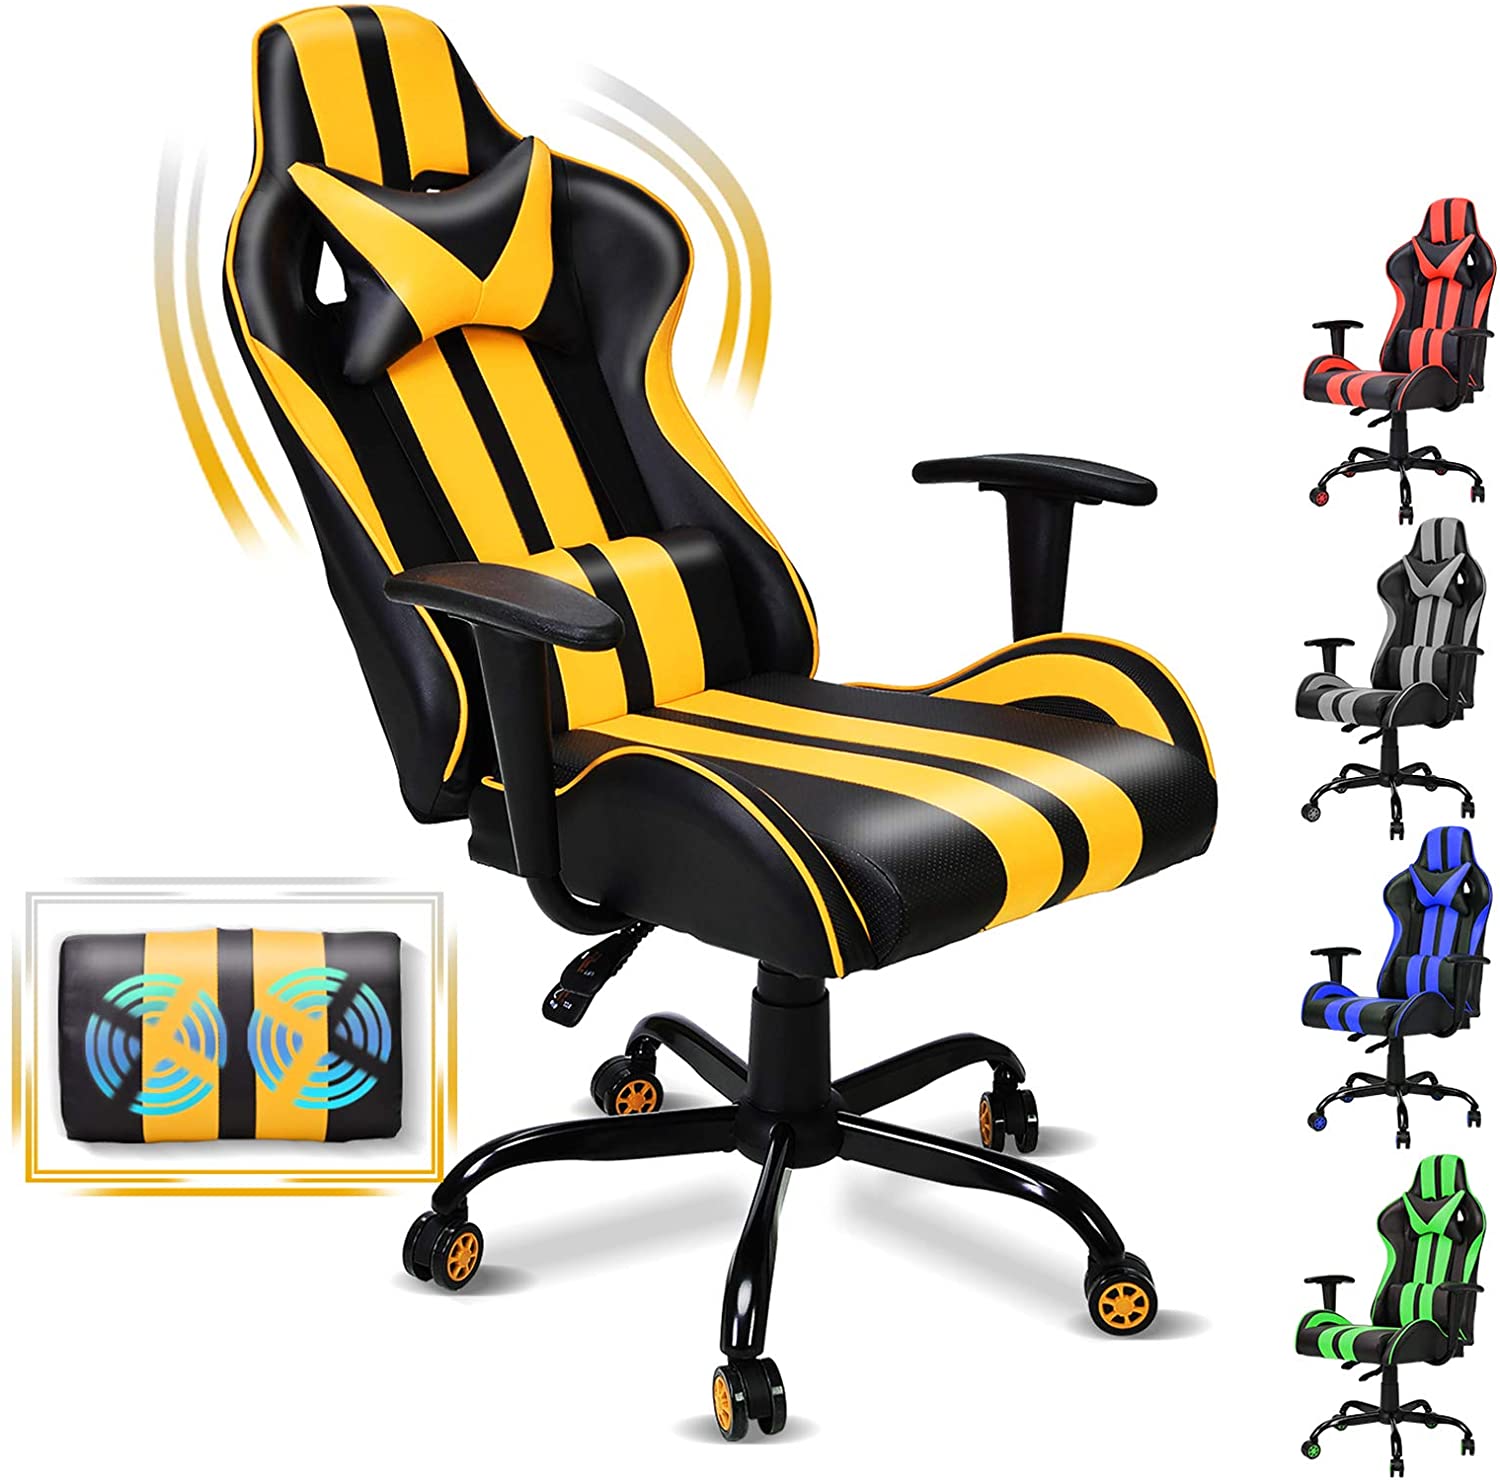 Silla de videojuegos con masajeador de color amarillo con negro